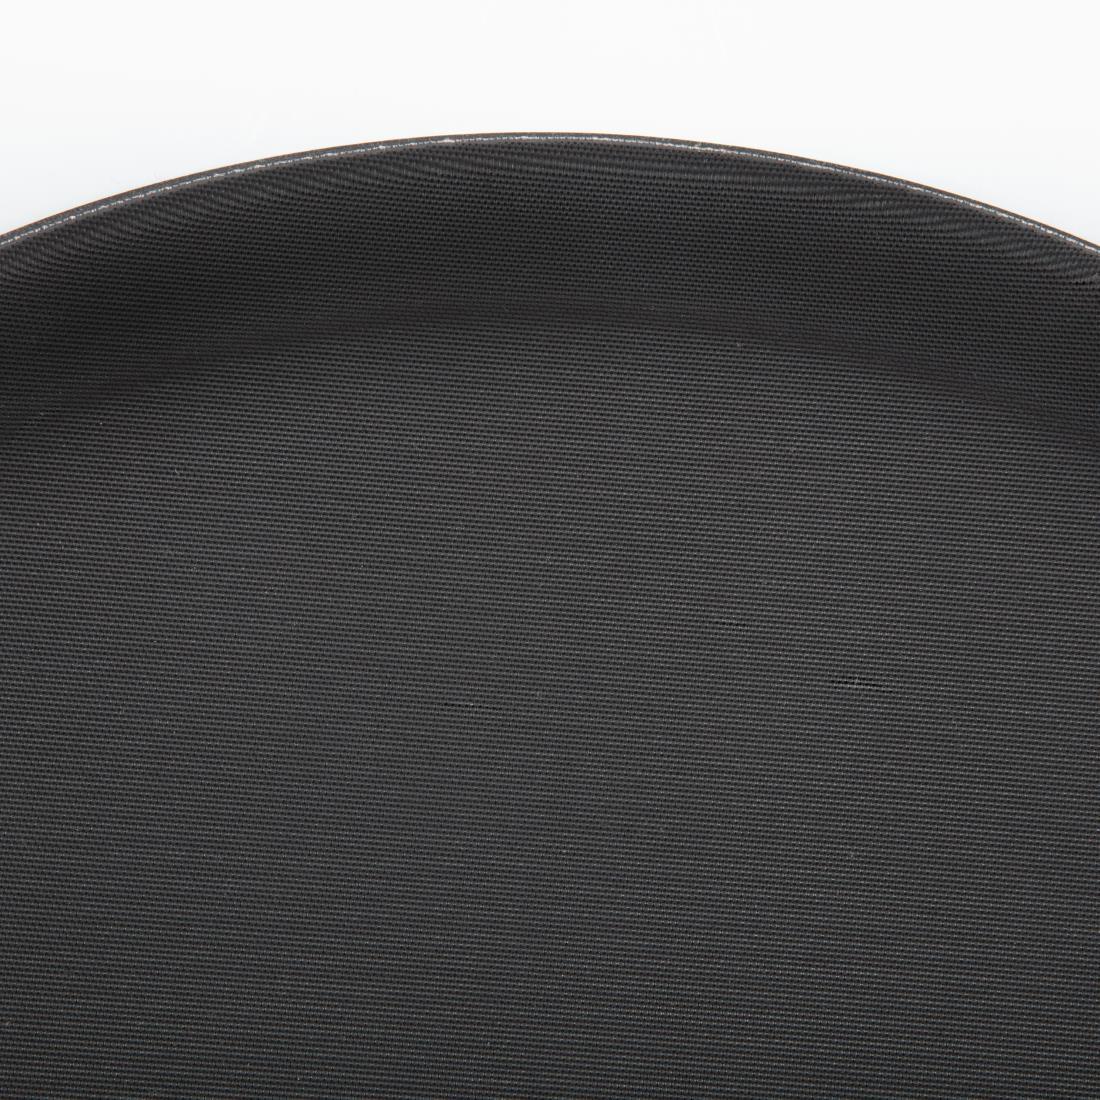 Olympia Kristallon Polypropylene Round Non-Slip Tray Black 356mm - C557  - 5